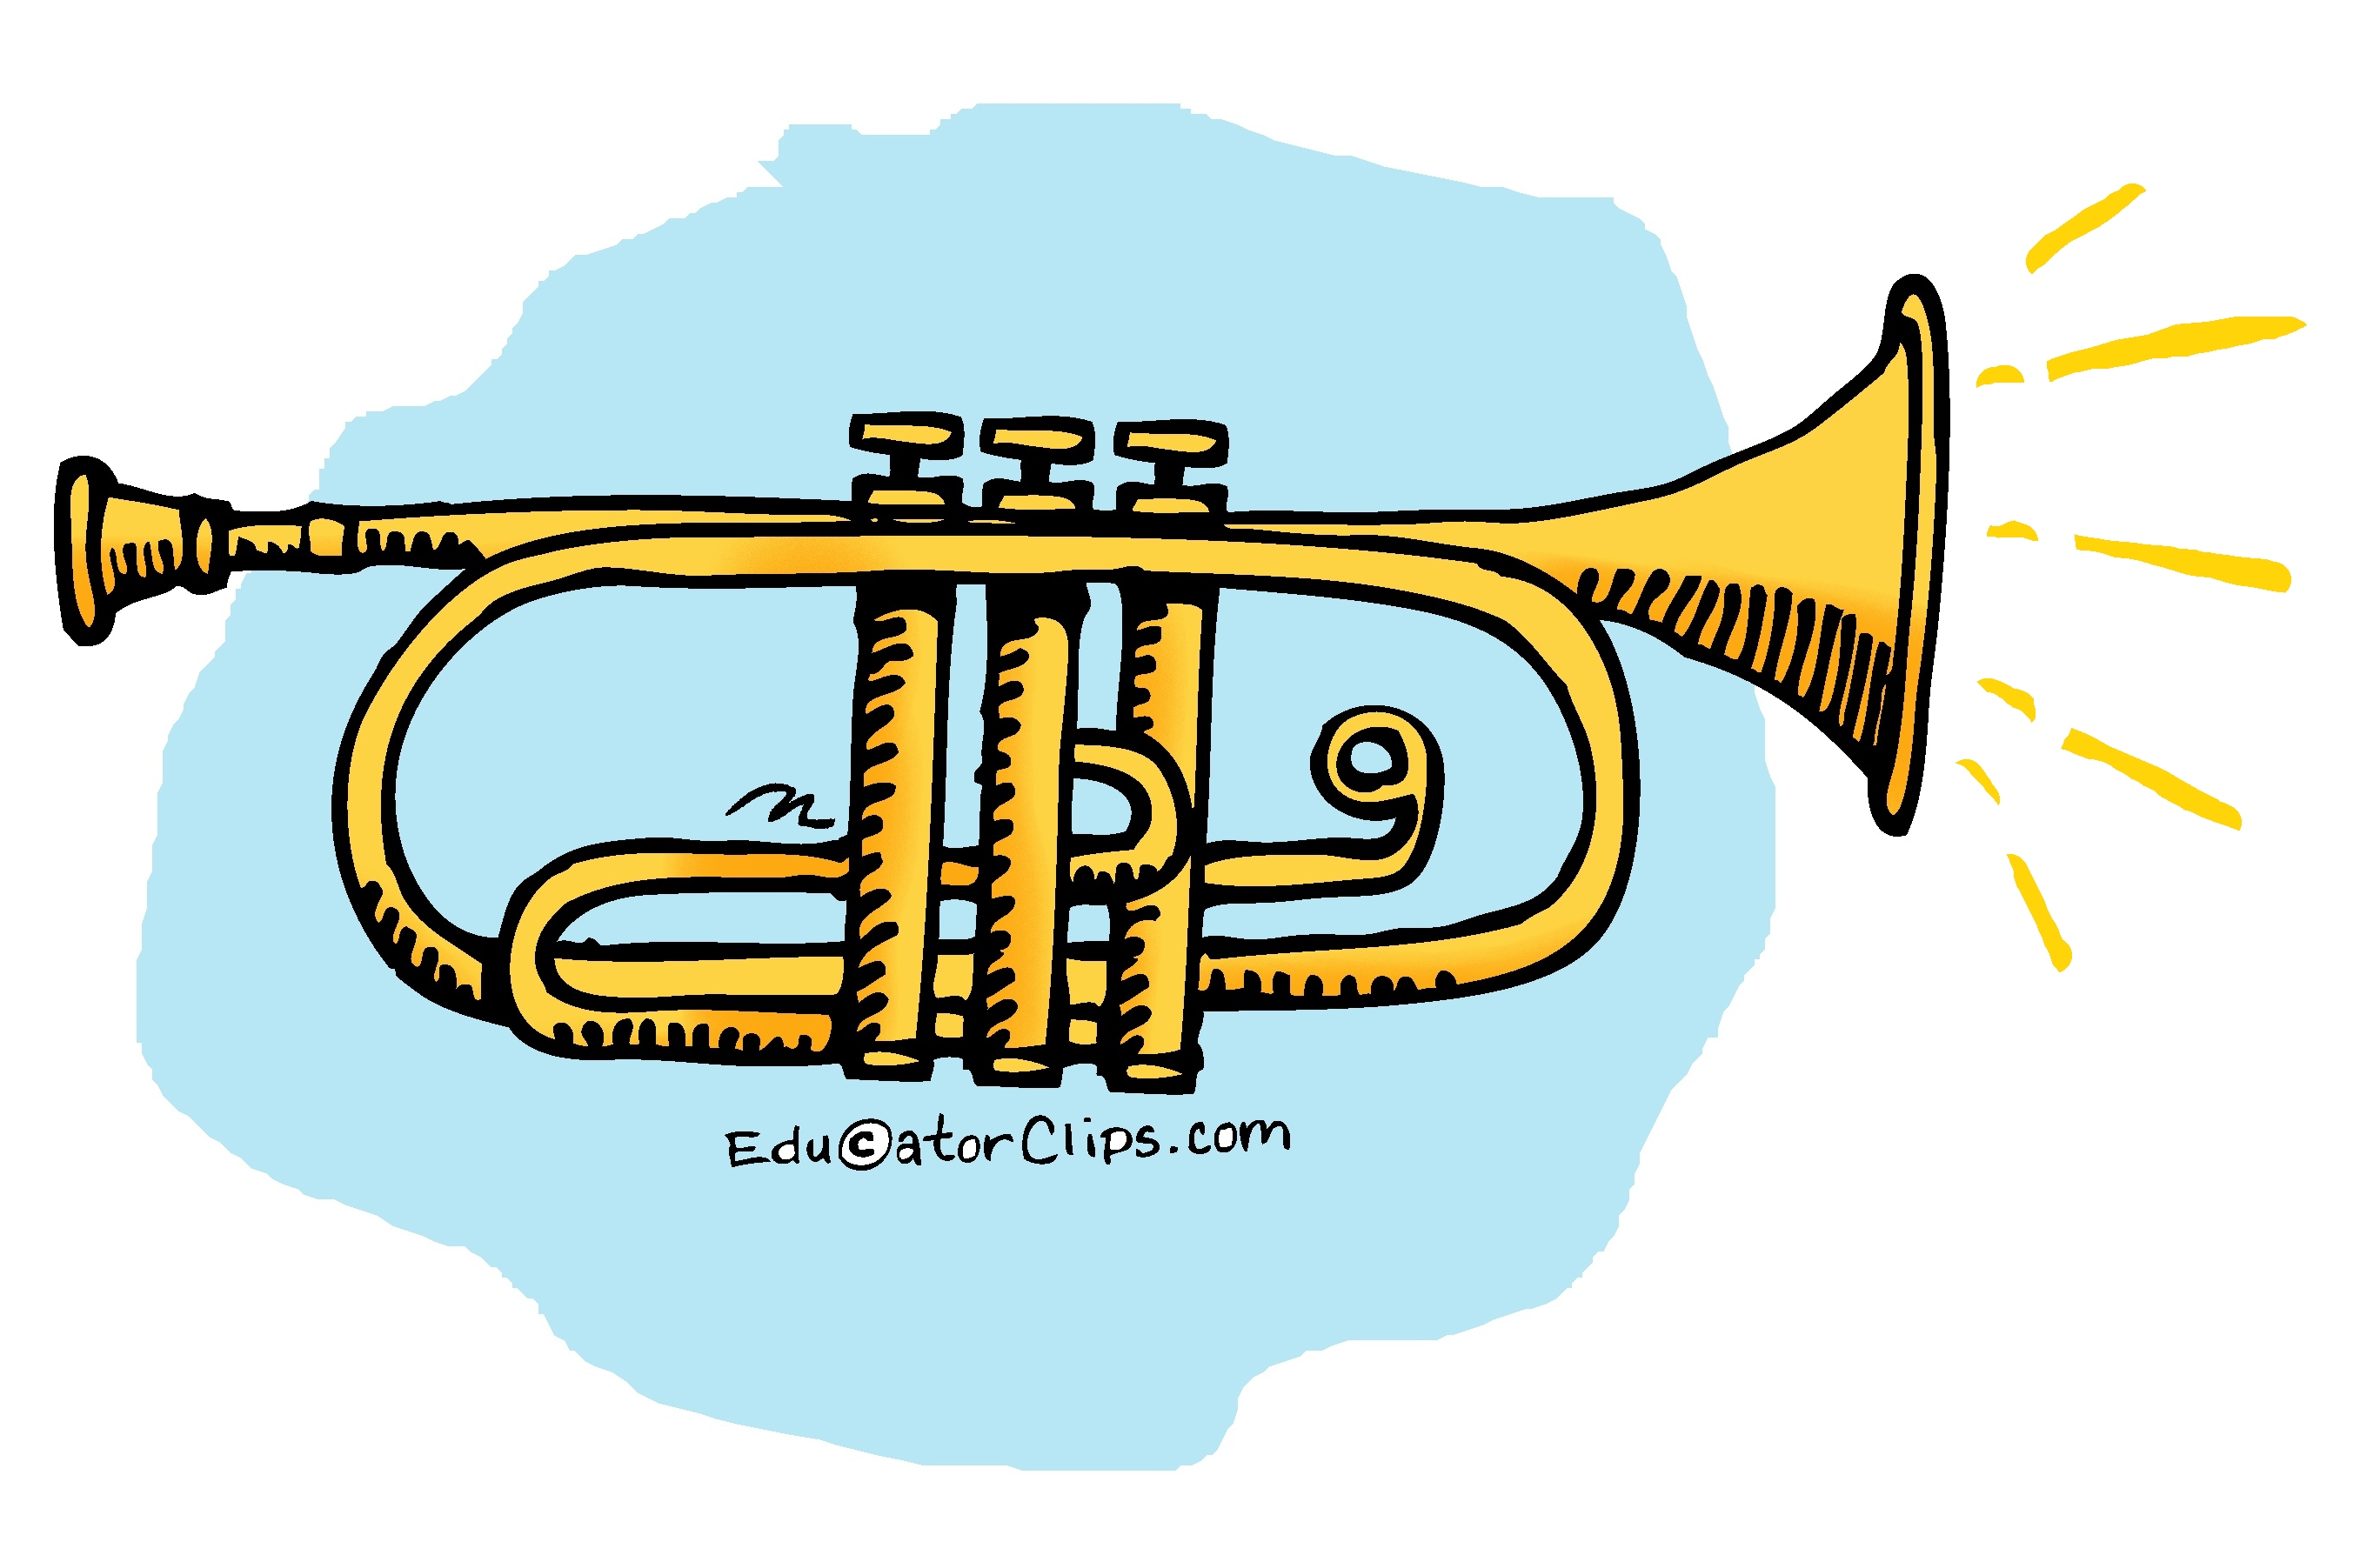 brass instrument clip art